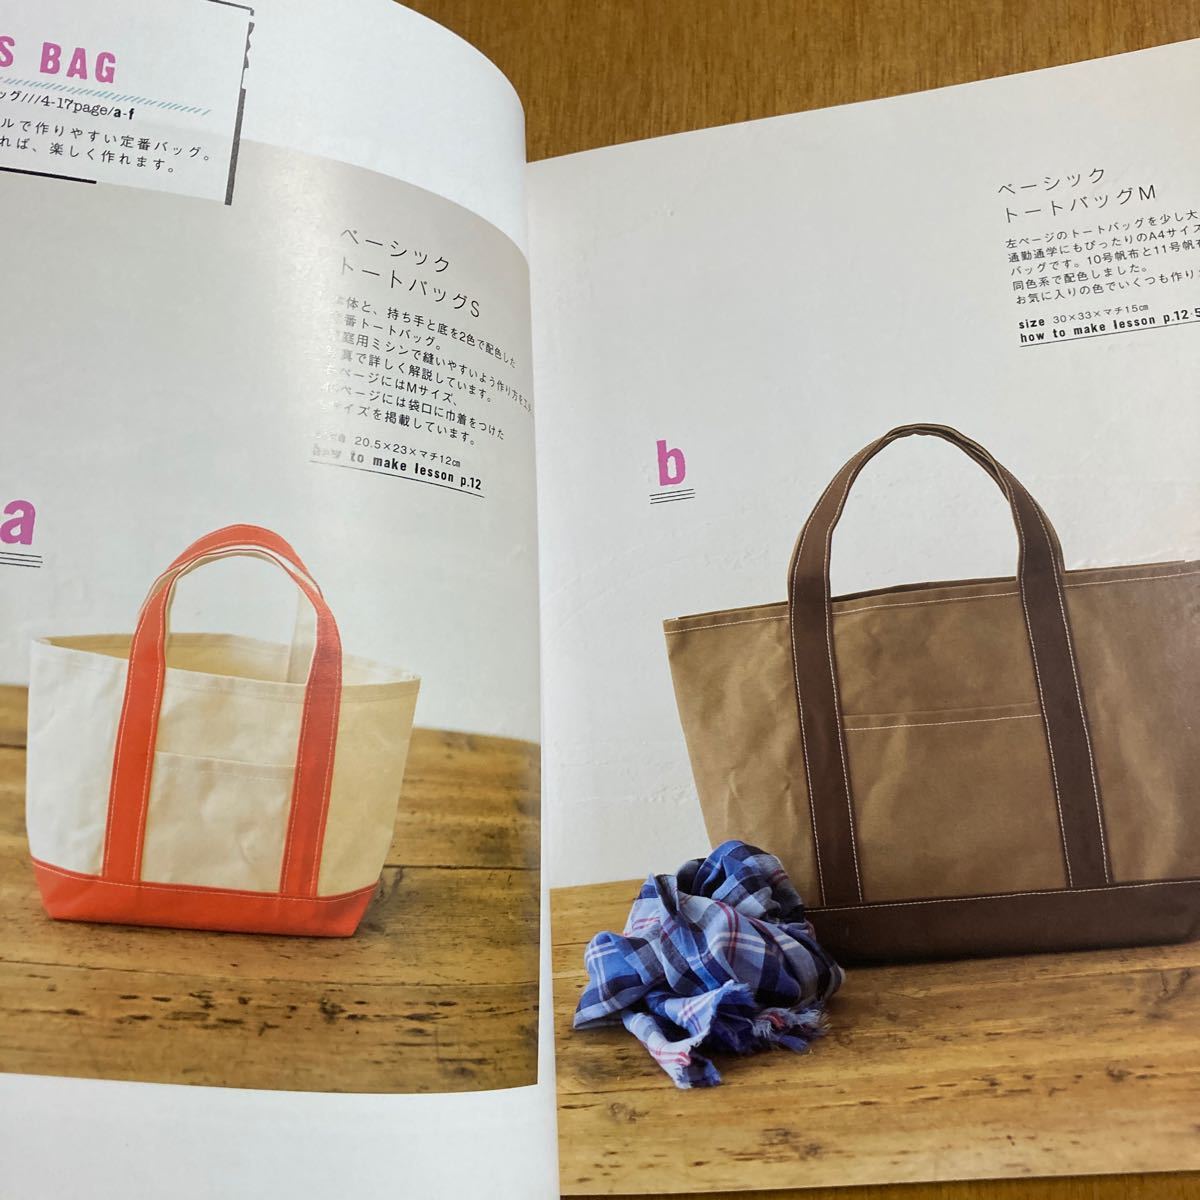 「家庭用ミシンで作る帆布のバッグ」の本